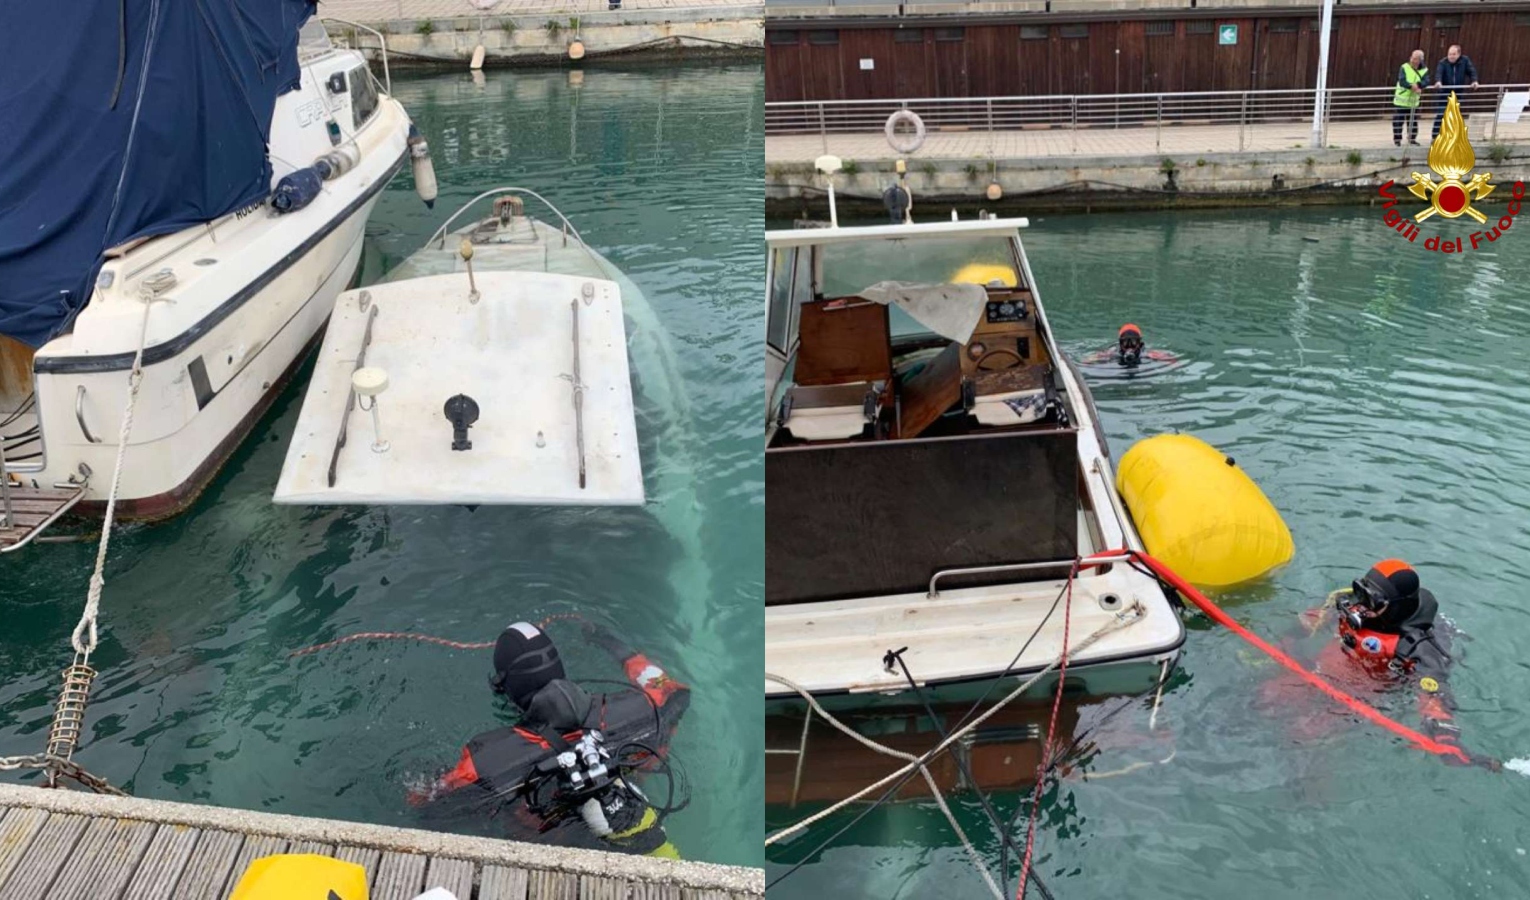 Porto di Pra', sommozzatori recuperano piccola imbarcazione